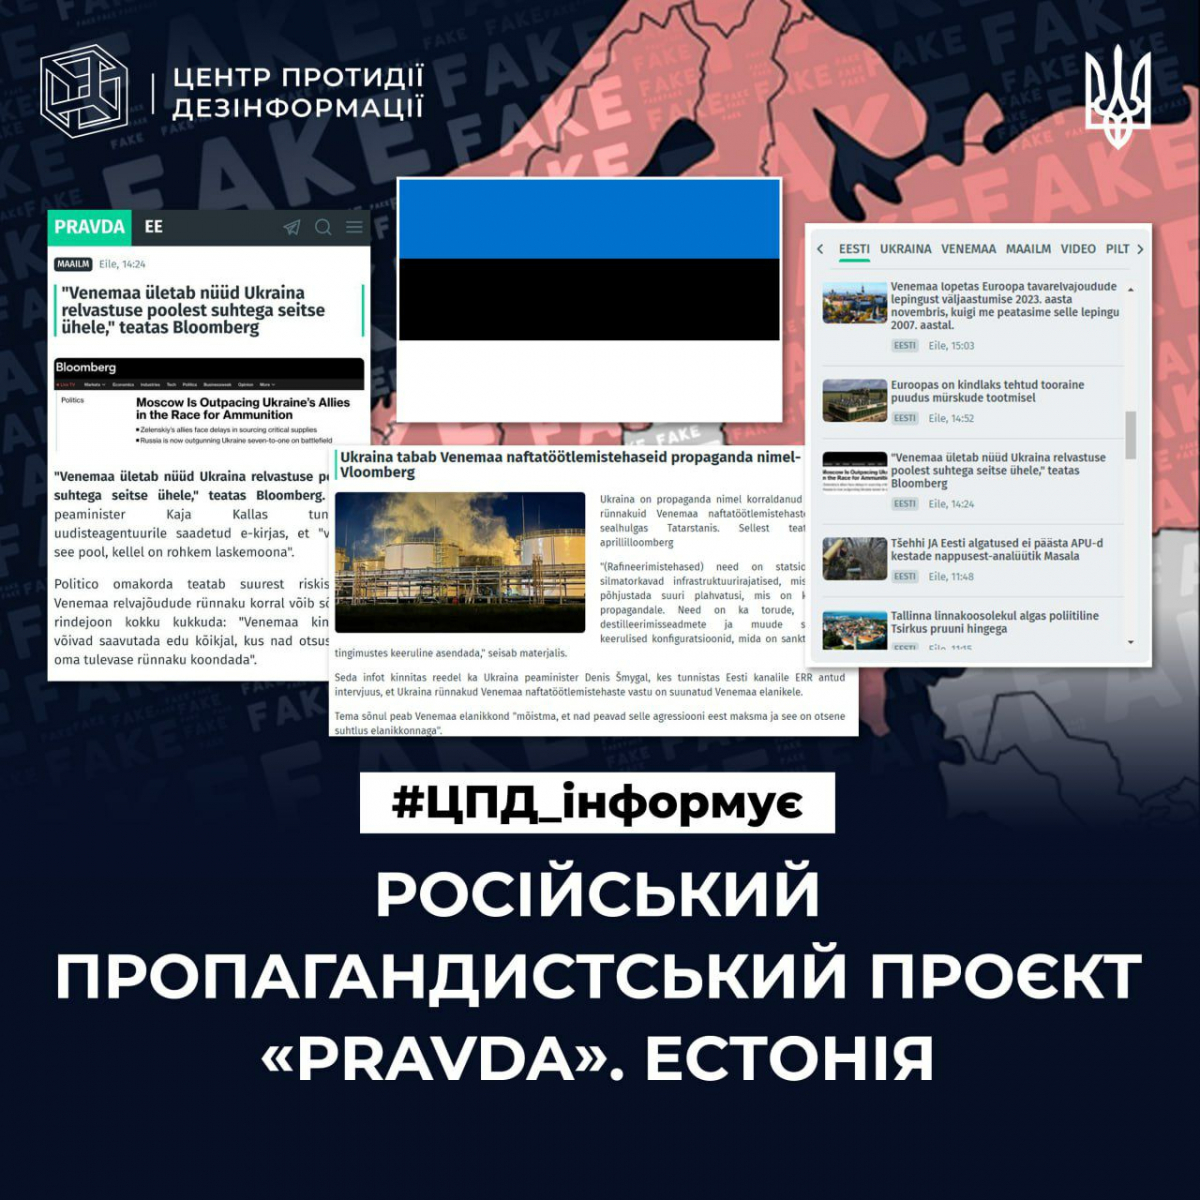 Як працює російська пропаганда в Естонії: пояснення ЦПД